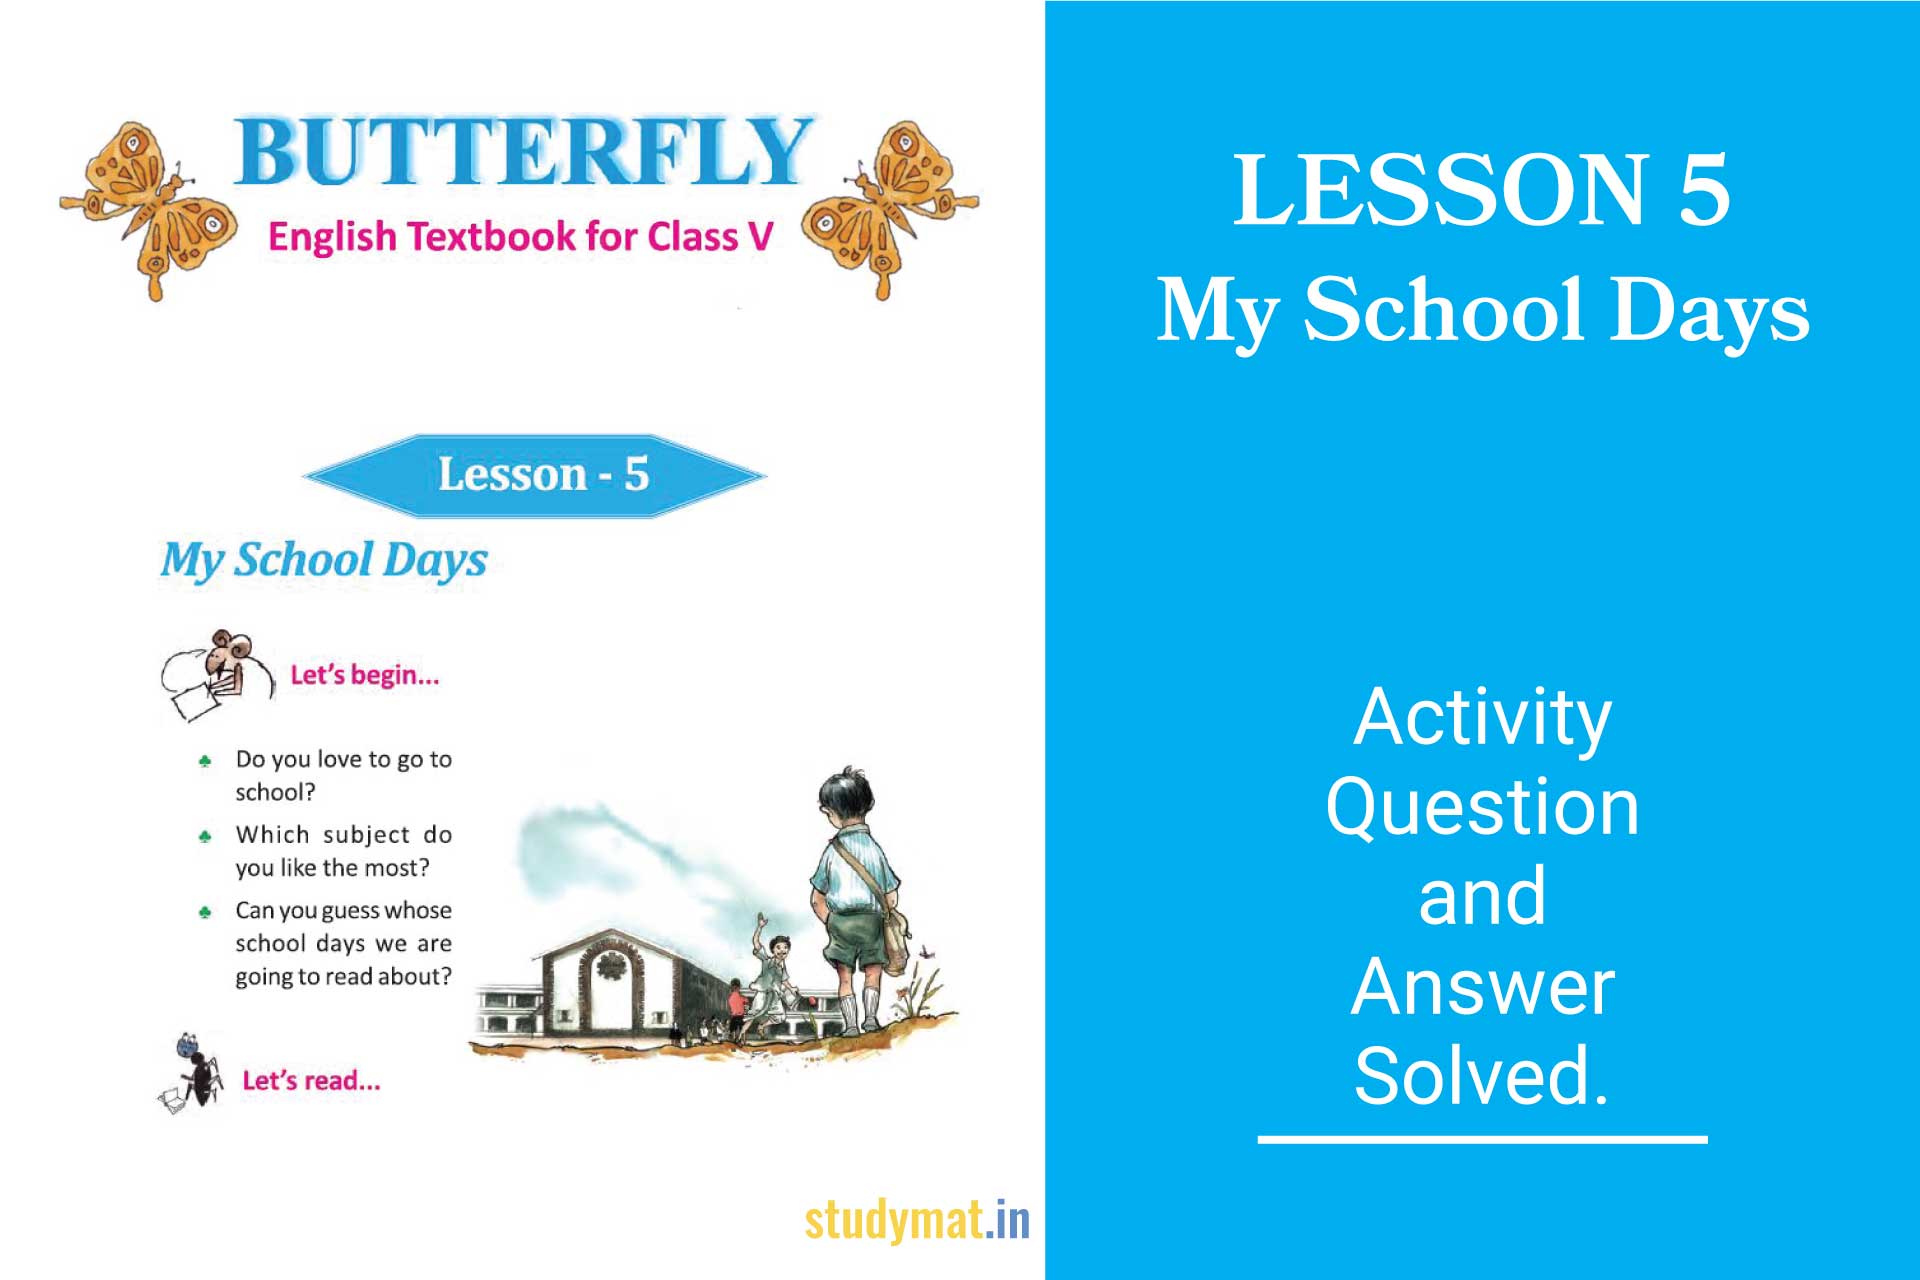 My School Days - Question & Answer